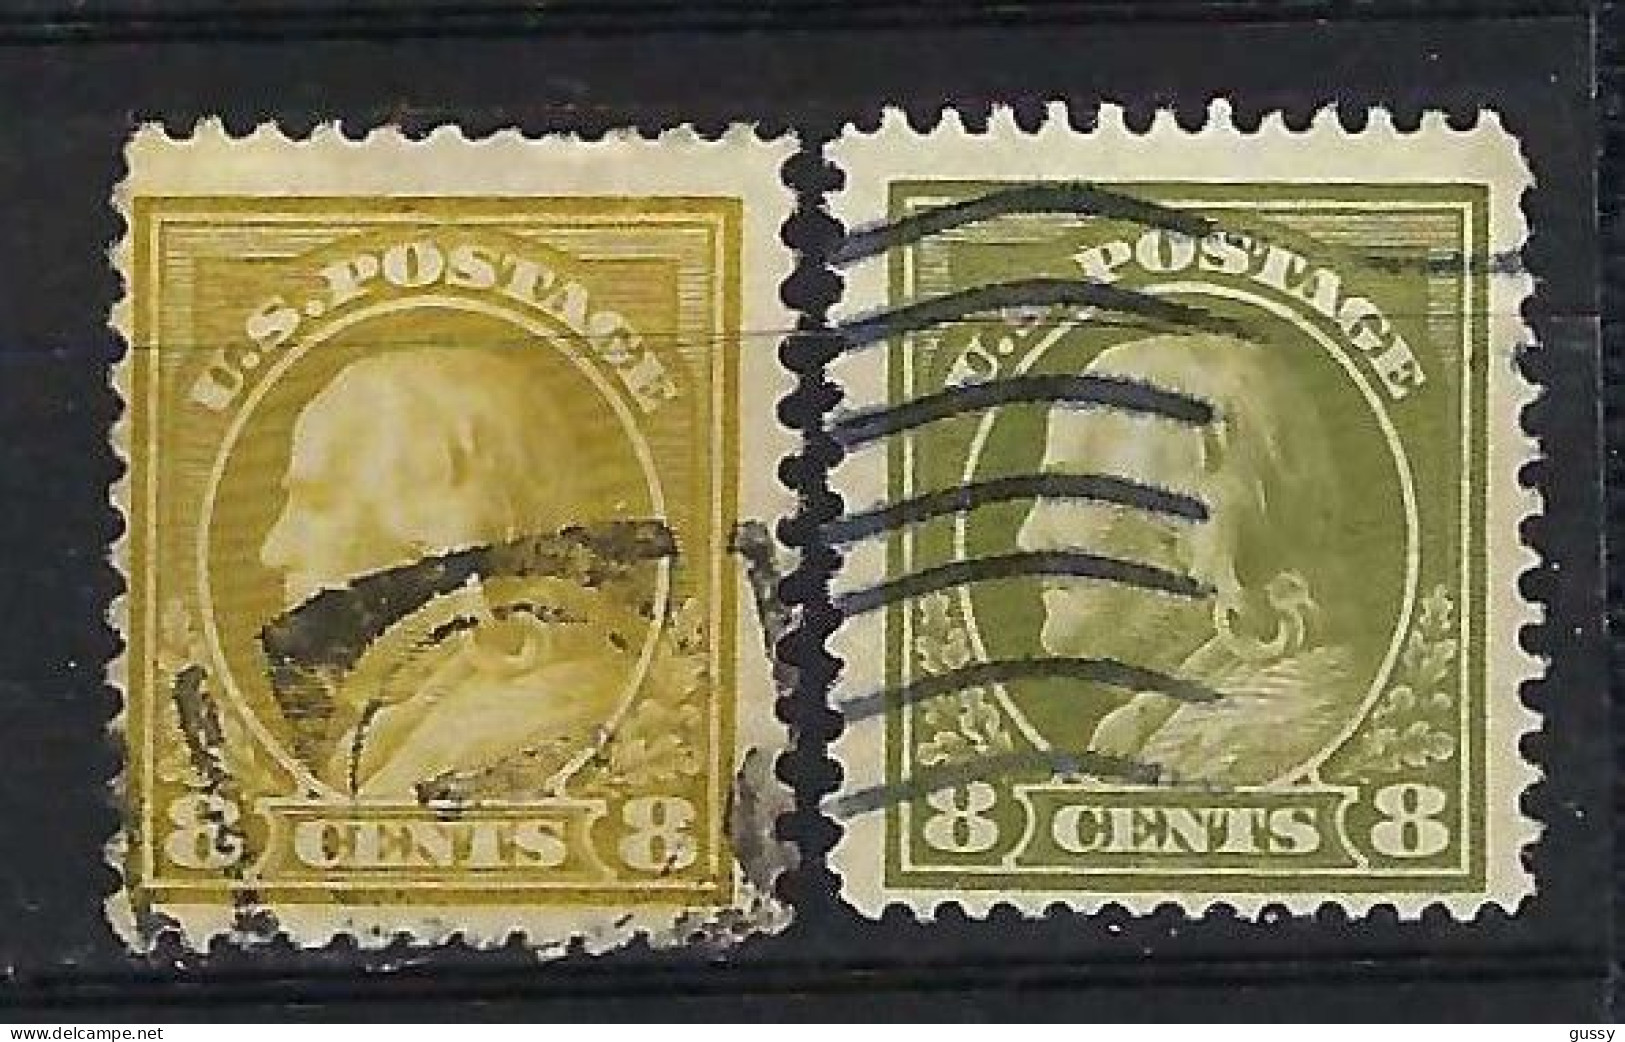 ETATS UNIS Ca.1908-19: Lot D'obl., 2 Nuances - Used Stamps